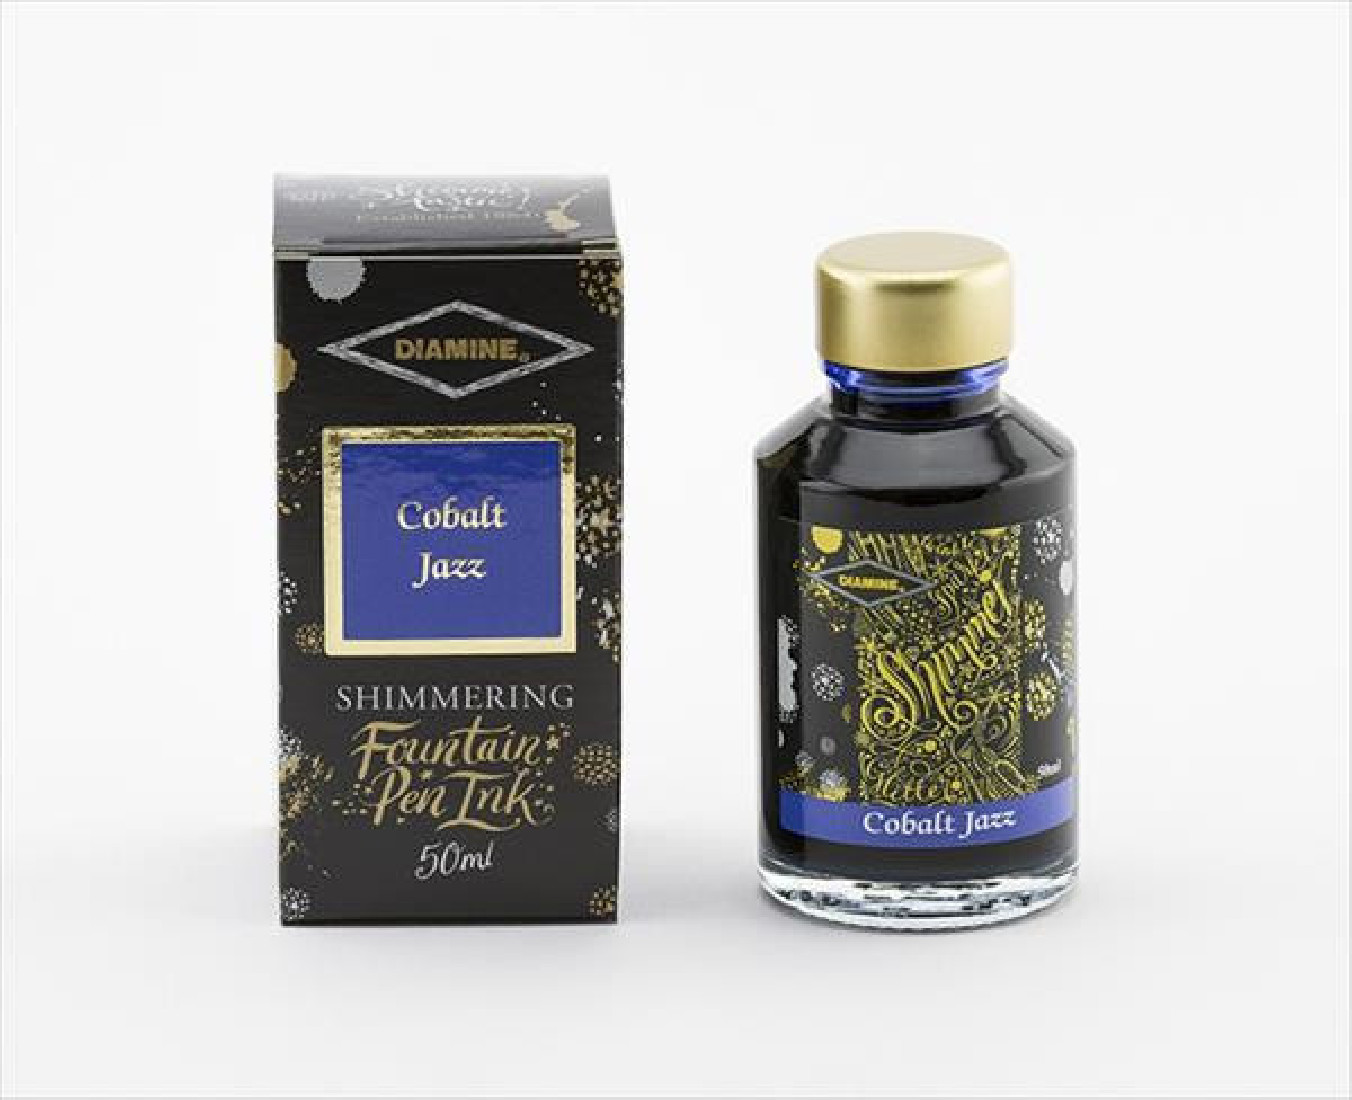 Diamine 50ml Cobalt Jazz Fountain pen shimmer ink